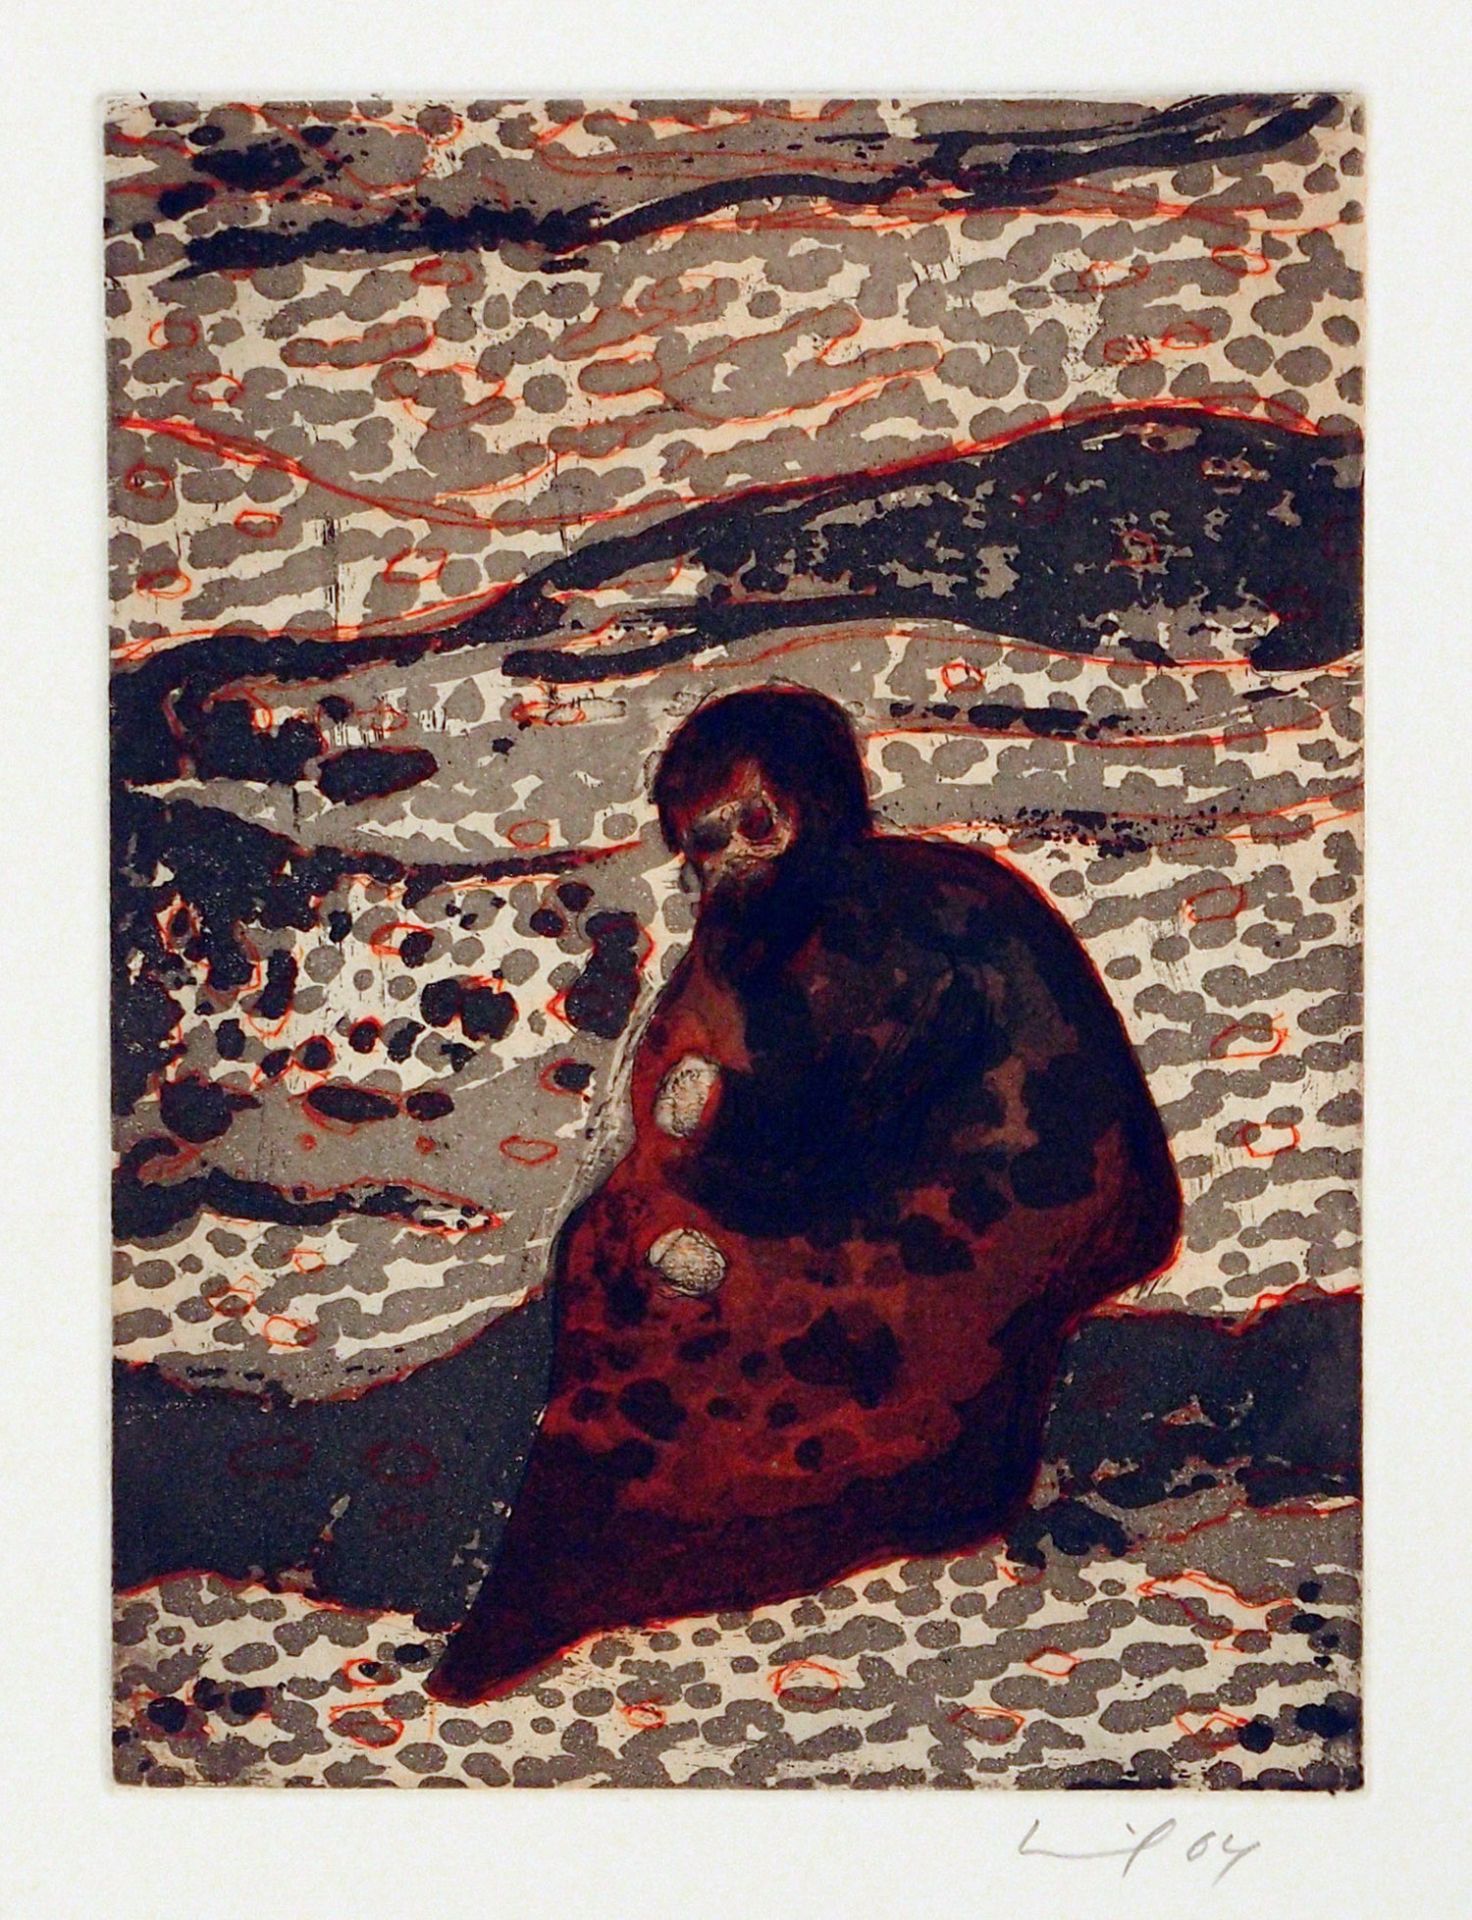 Peter Doig Edinburgh 1959 - lebt auf Trinidad Figure by a River. Farbradierung. 2004. 20 x 14,7